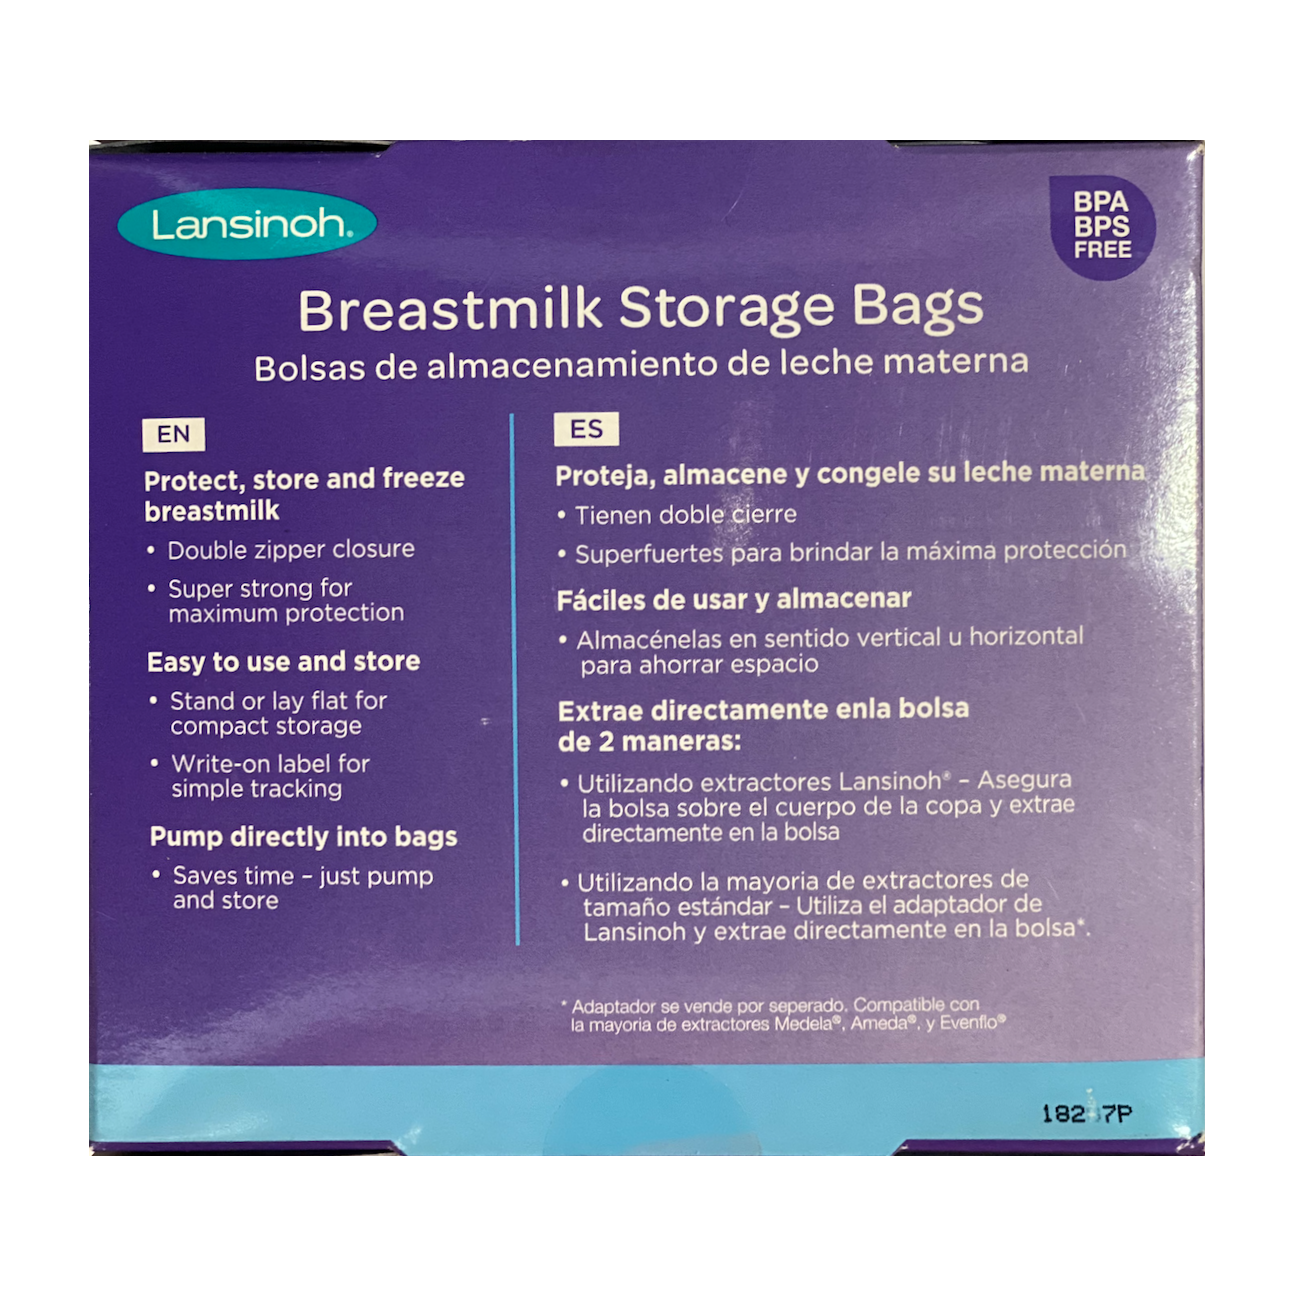 Medela Storage Bags, Breast Milk, 6 Ounce - 25 bags